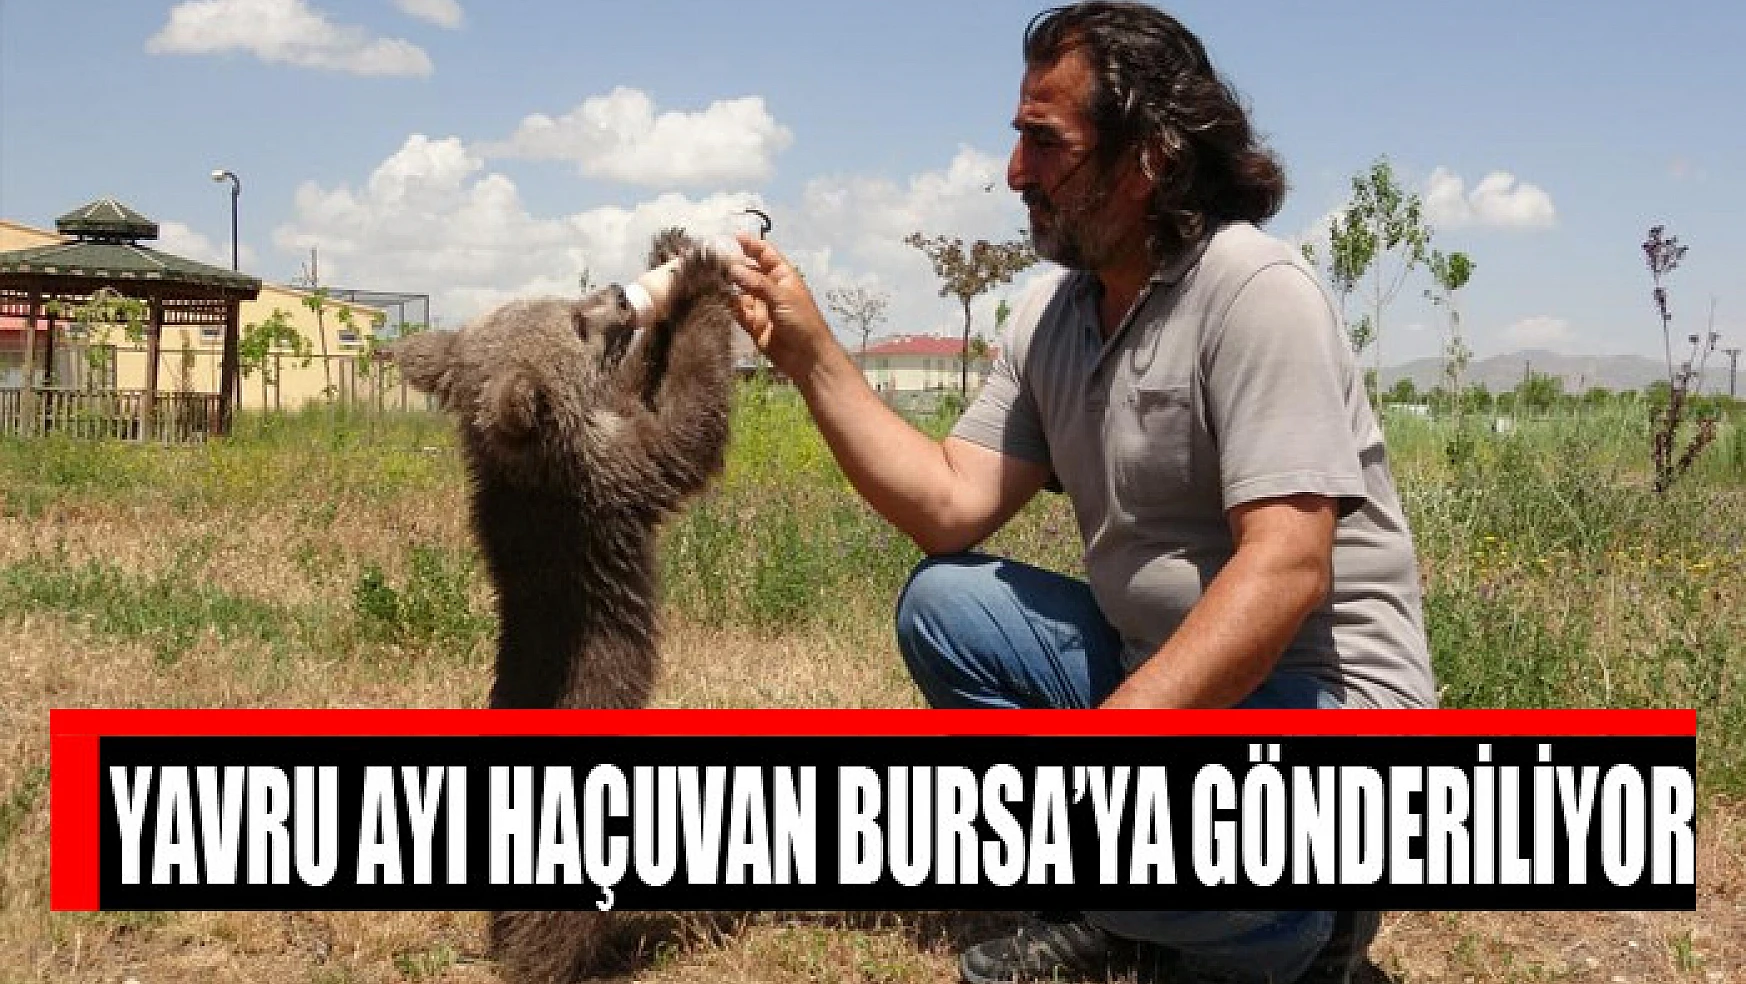 Yavru ayı Haçuvan Bursa'ya gönderiliyor